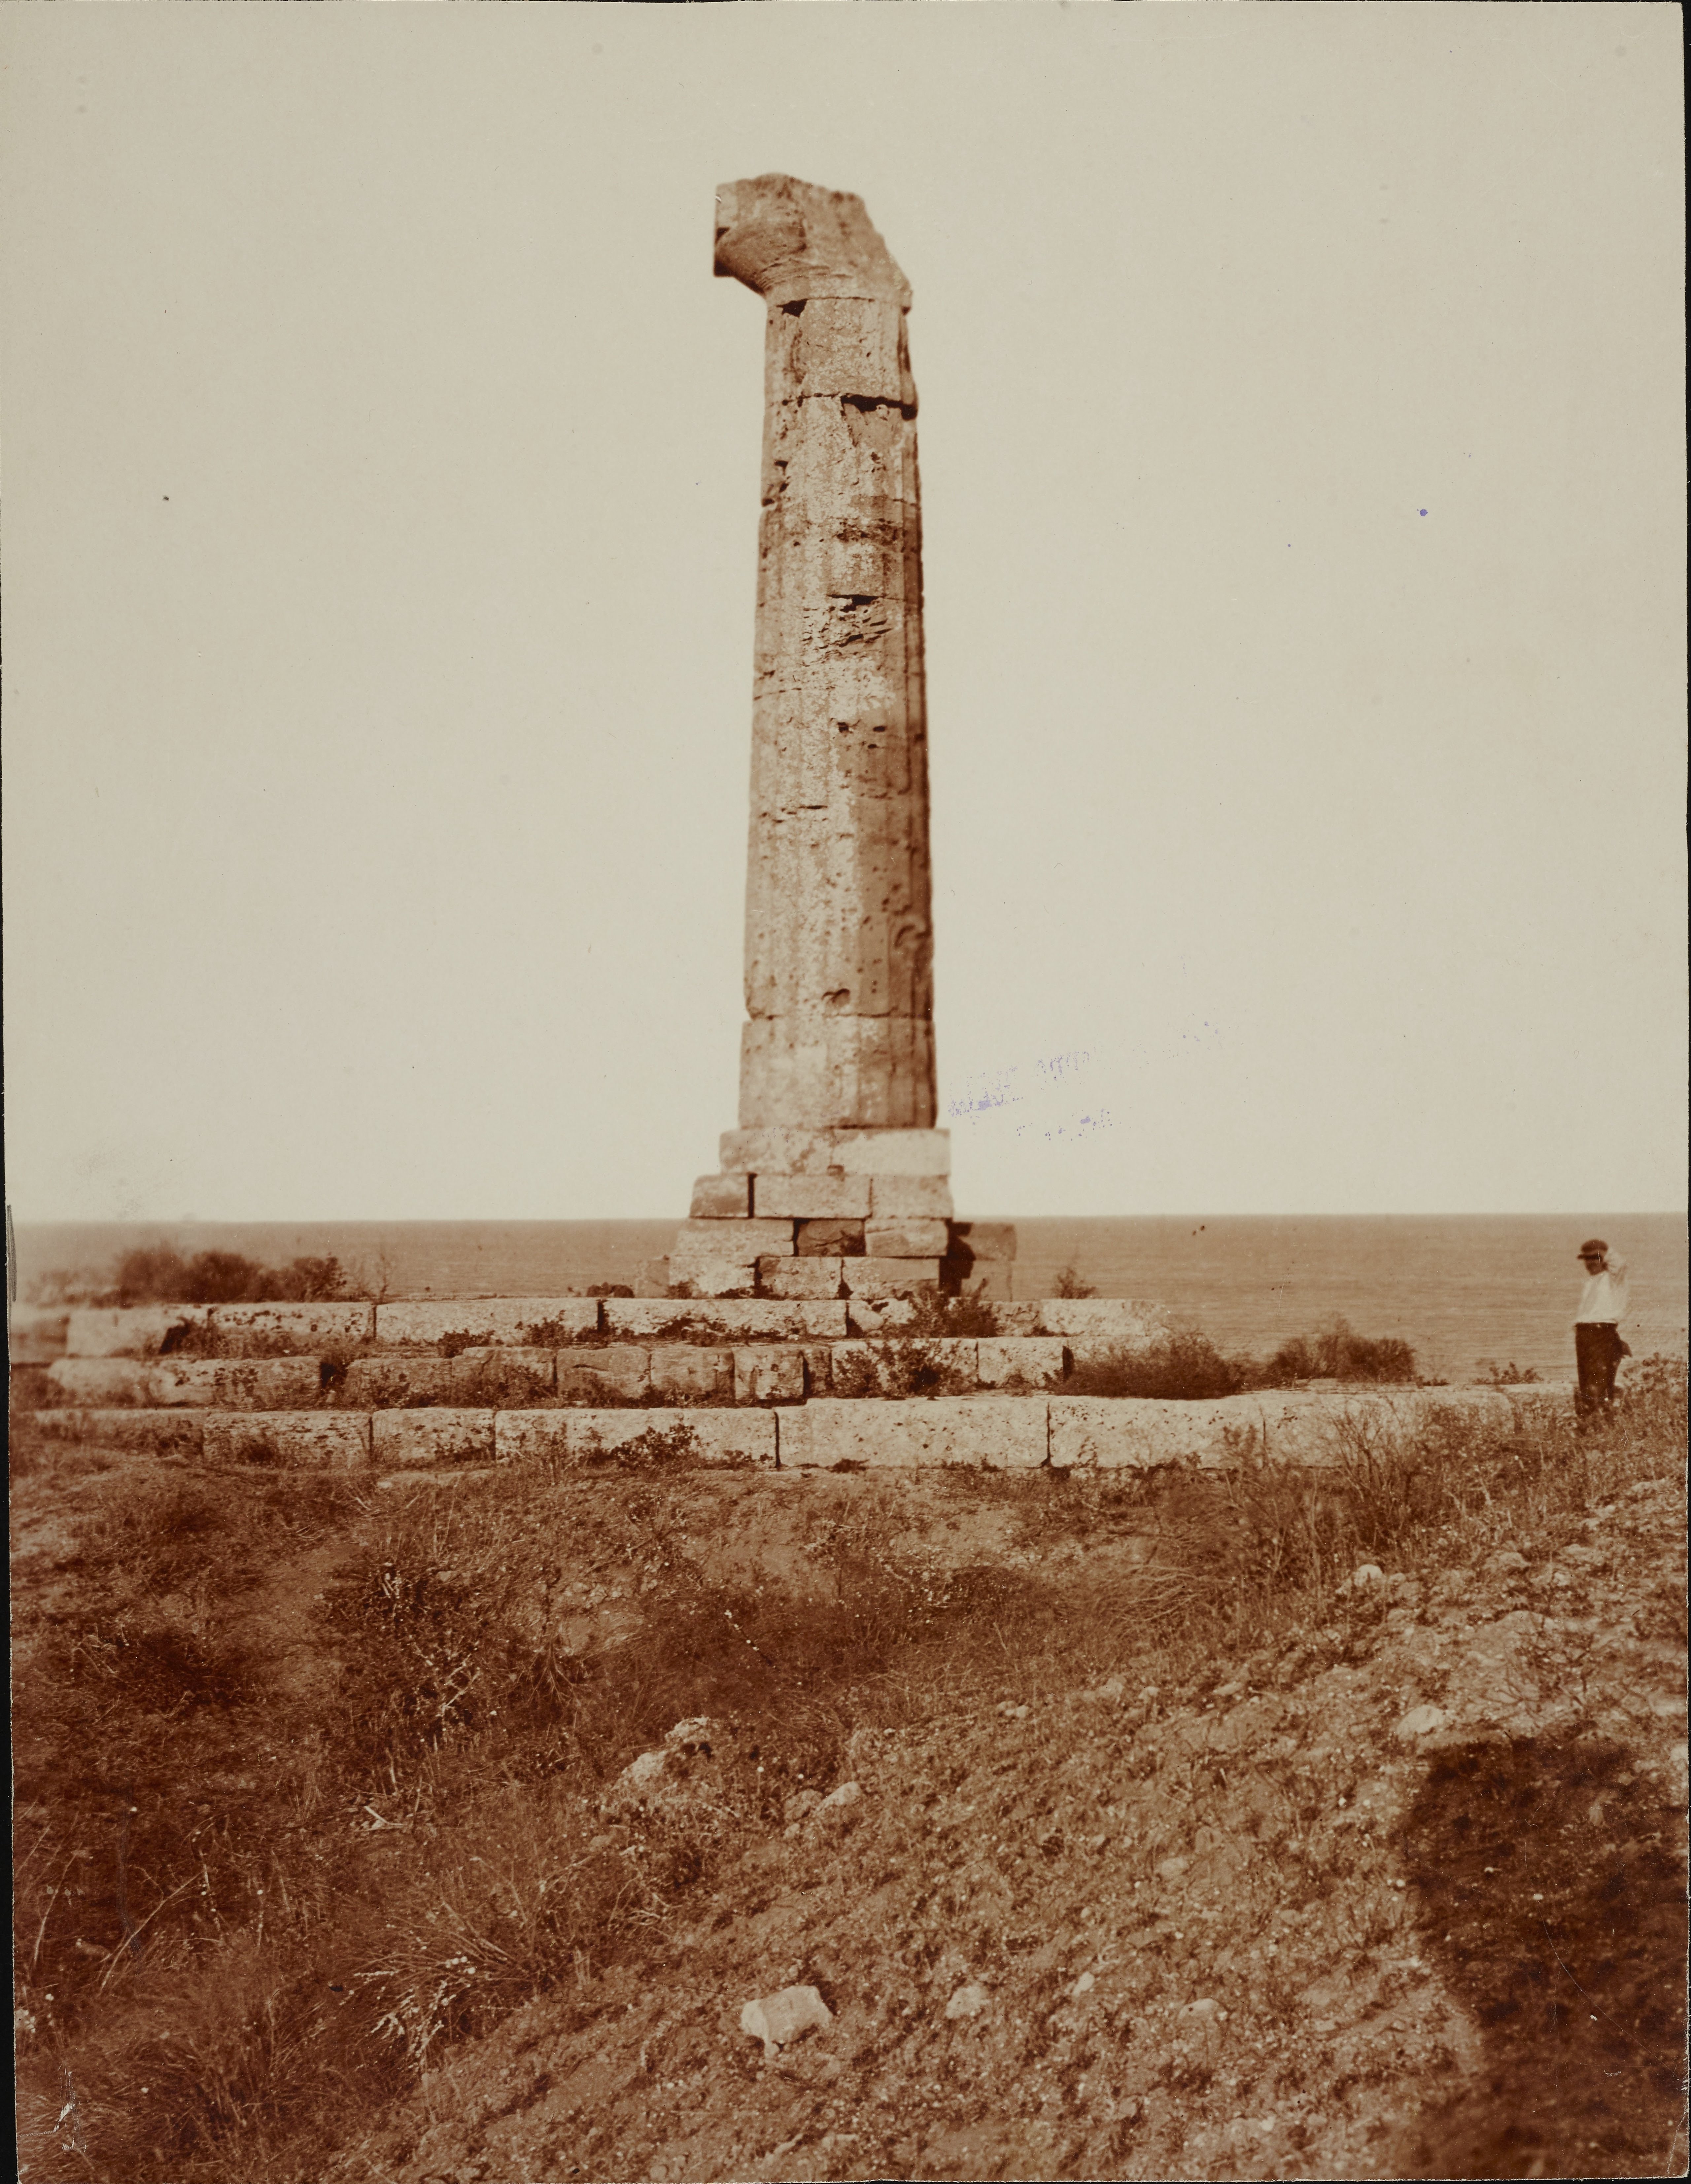 Fotografo non identificato, Crotone, Capo Colonna - Tempio di Hera Lacinia, ultima colonna rimasta in piedi, 1901-1925, carbone, MPI308843